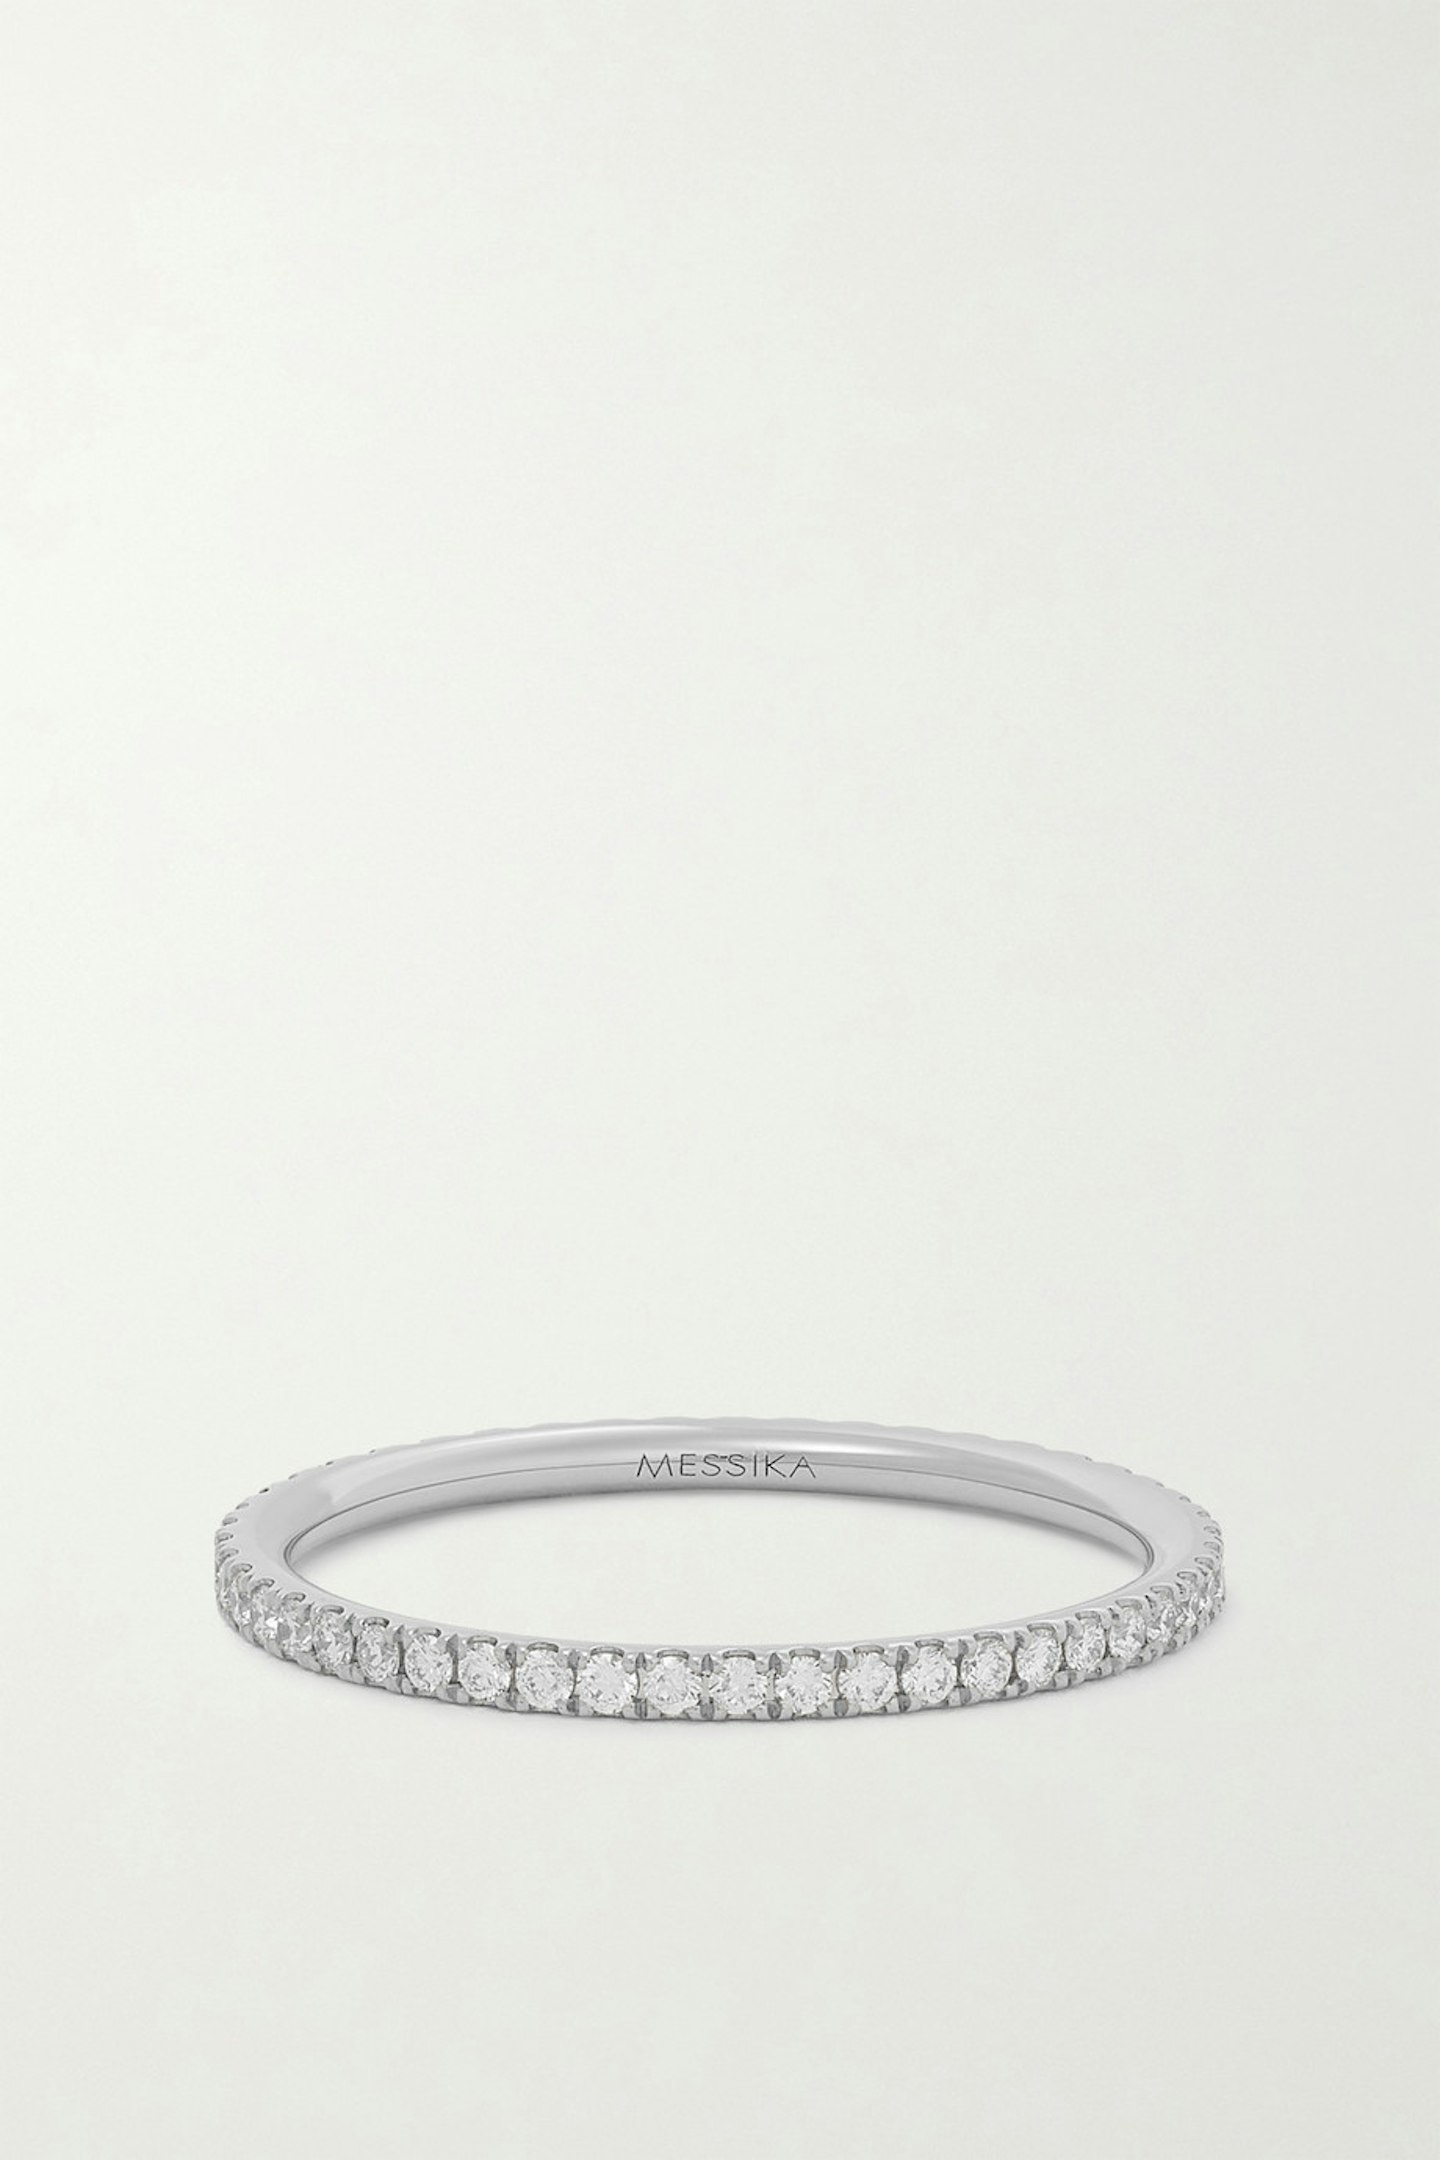 Messika, Gatsby 18-karat white gold diamond ring, £1,100ring, £1,100